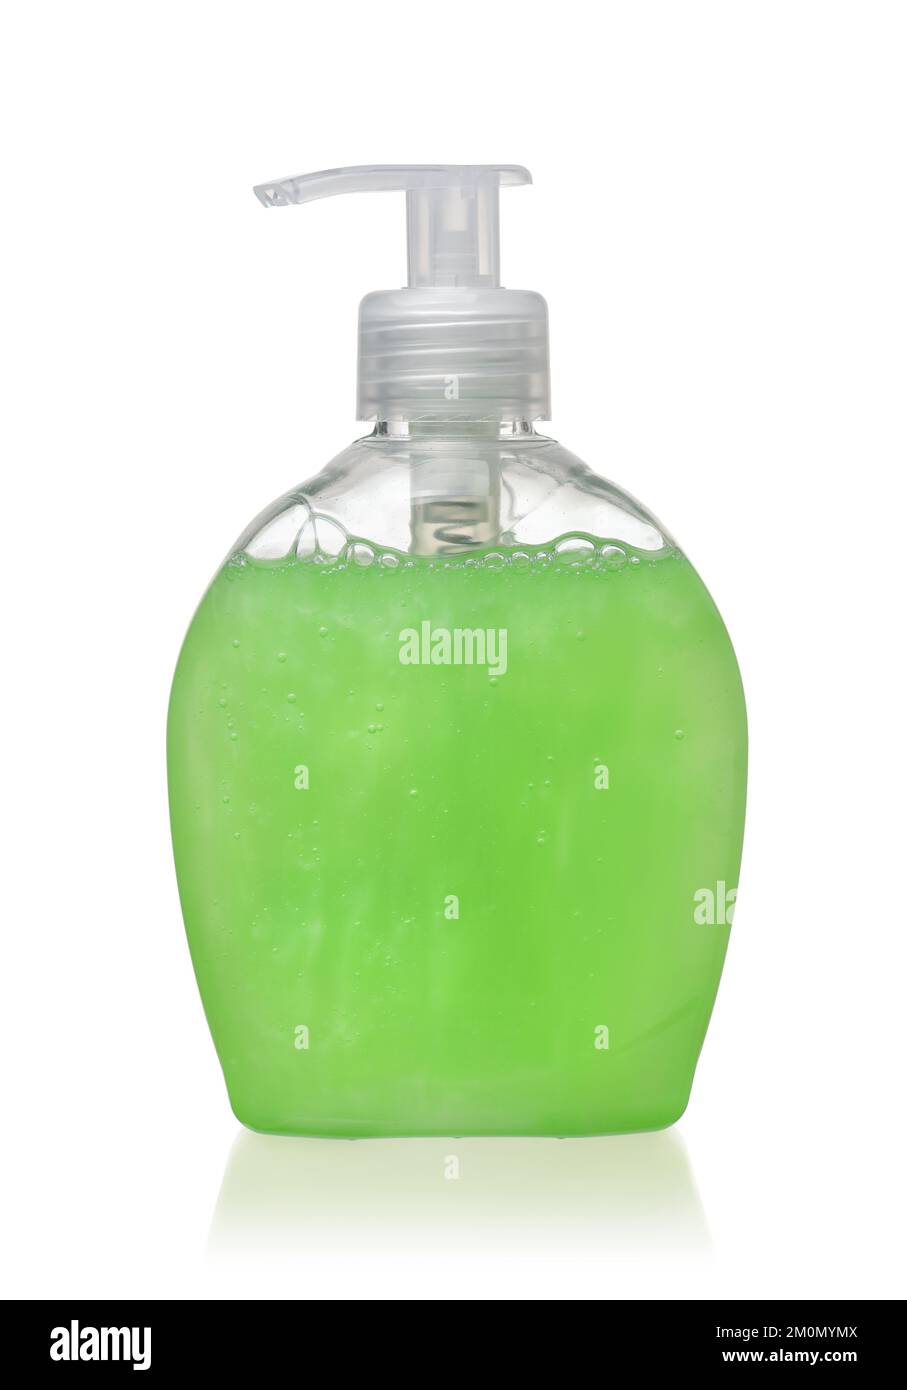 Vue avant de la bouteille en plastique de la pompe à savon liquide verte isolée sur le blanc Banque D'Images